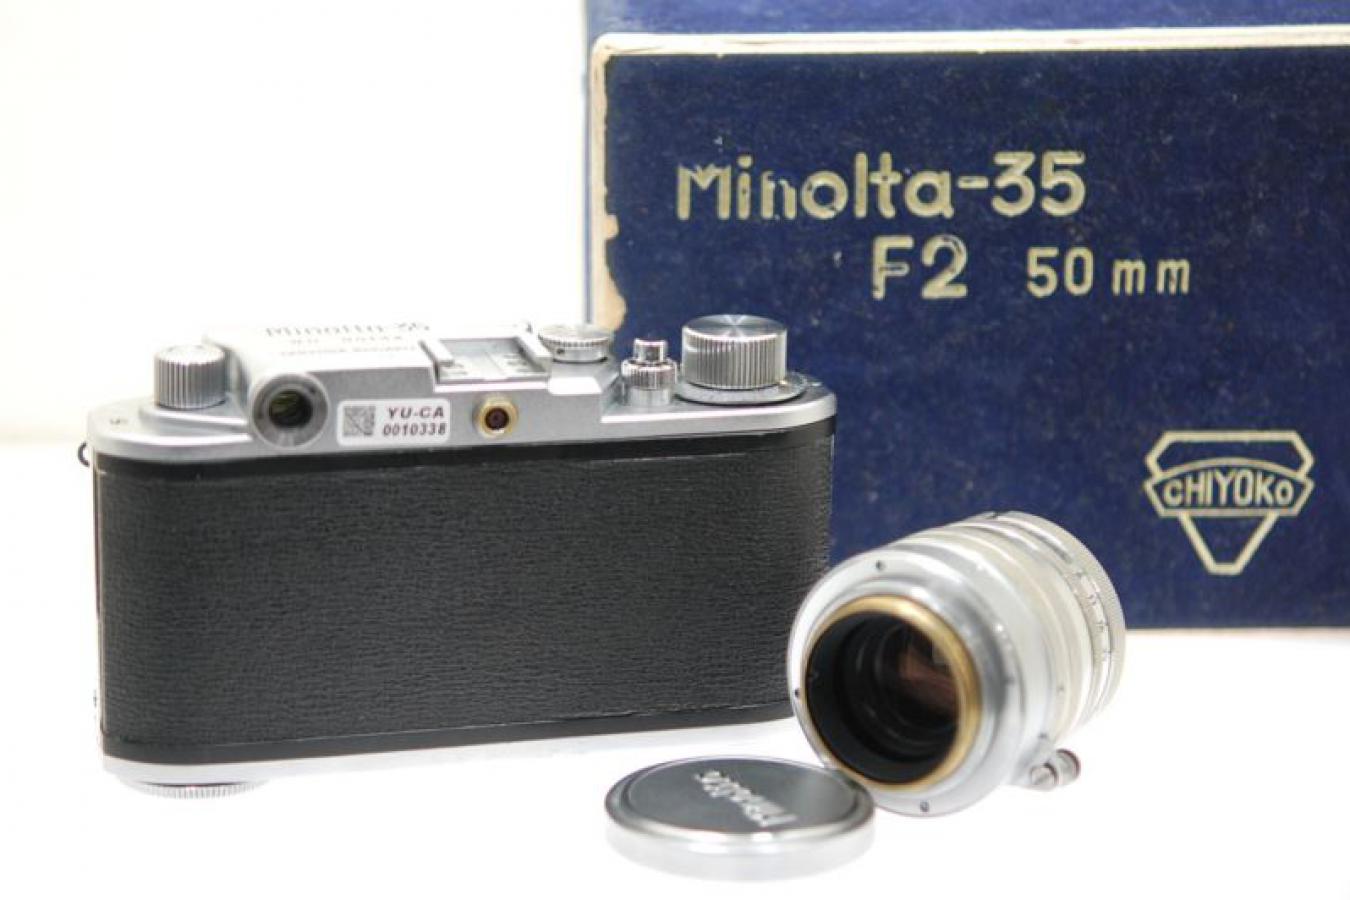 ミノルタ 千代田光学製 ミノルタ35 II型 スーパーROKKOR 5cm F2付 OH済